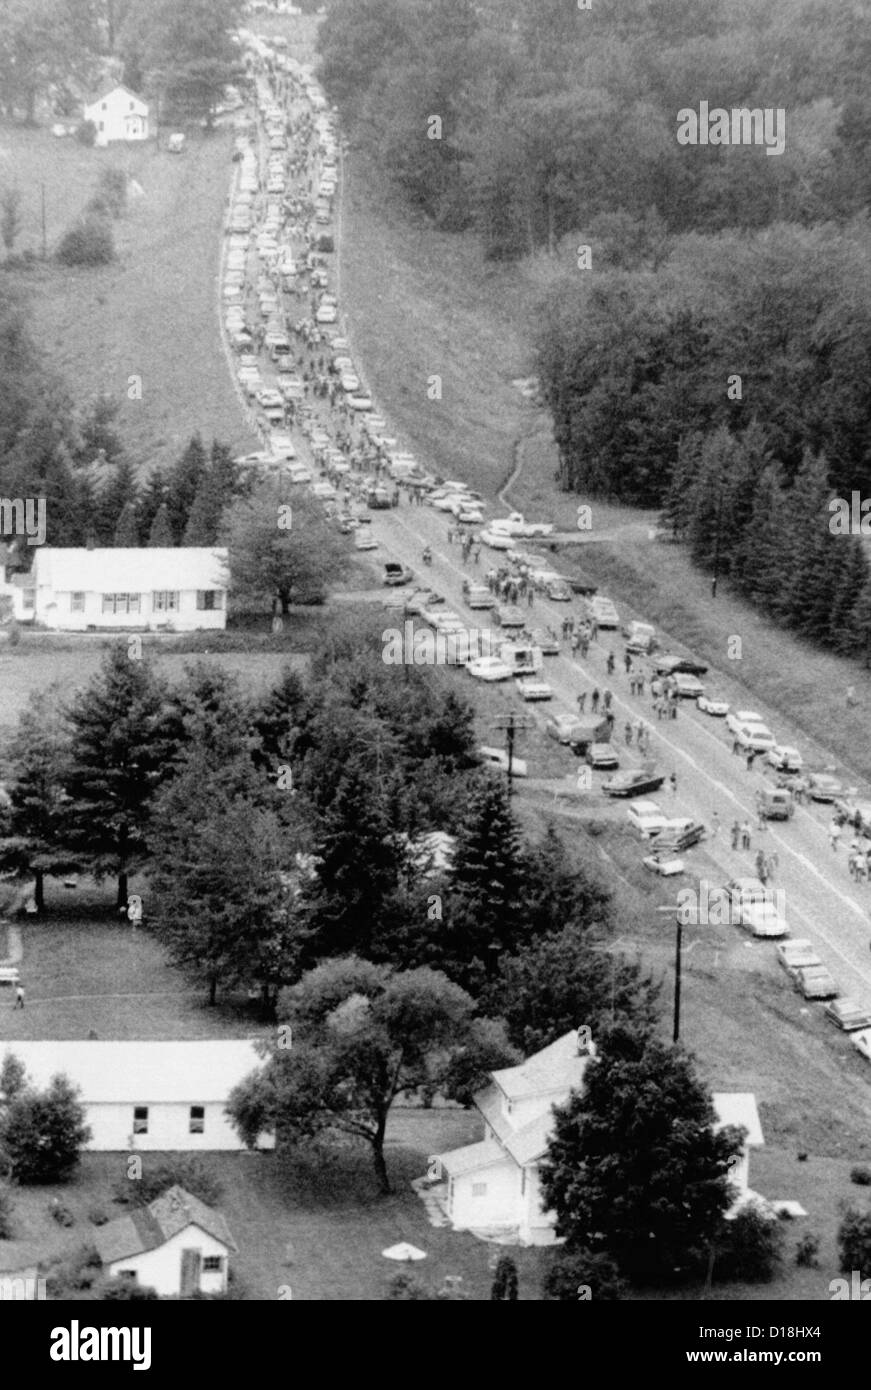 Laissant juste la musique de Woodstock. Vue aérienne de voitures rassemblées sur une autoroute à environ 10 milles de la Woodstock Music and Art Fair comme Banque D'Images